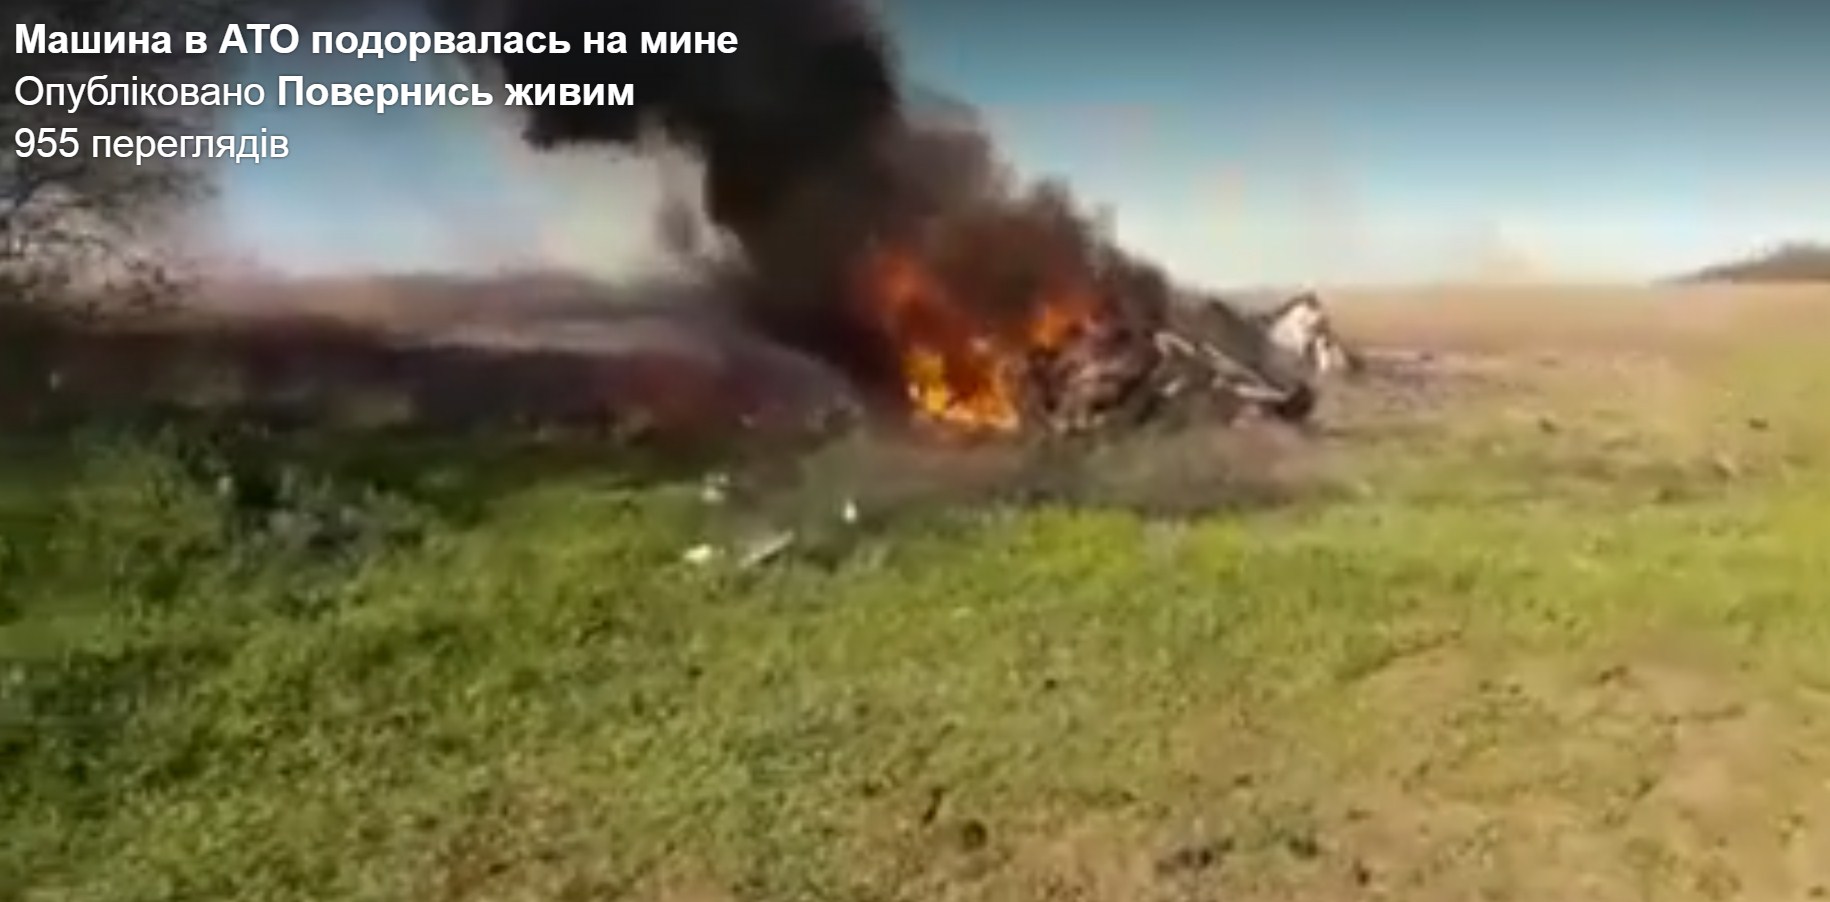 У Маріуполі трактор підірвався на міні: загинули два співробітники “мнс рф” і російський військовий